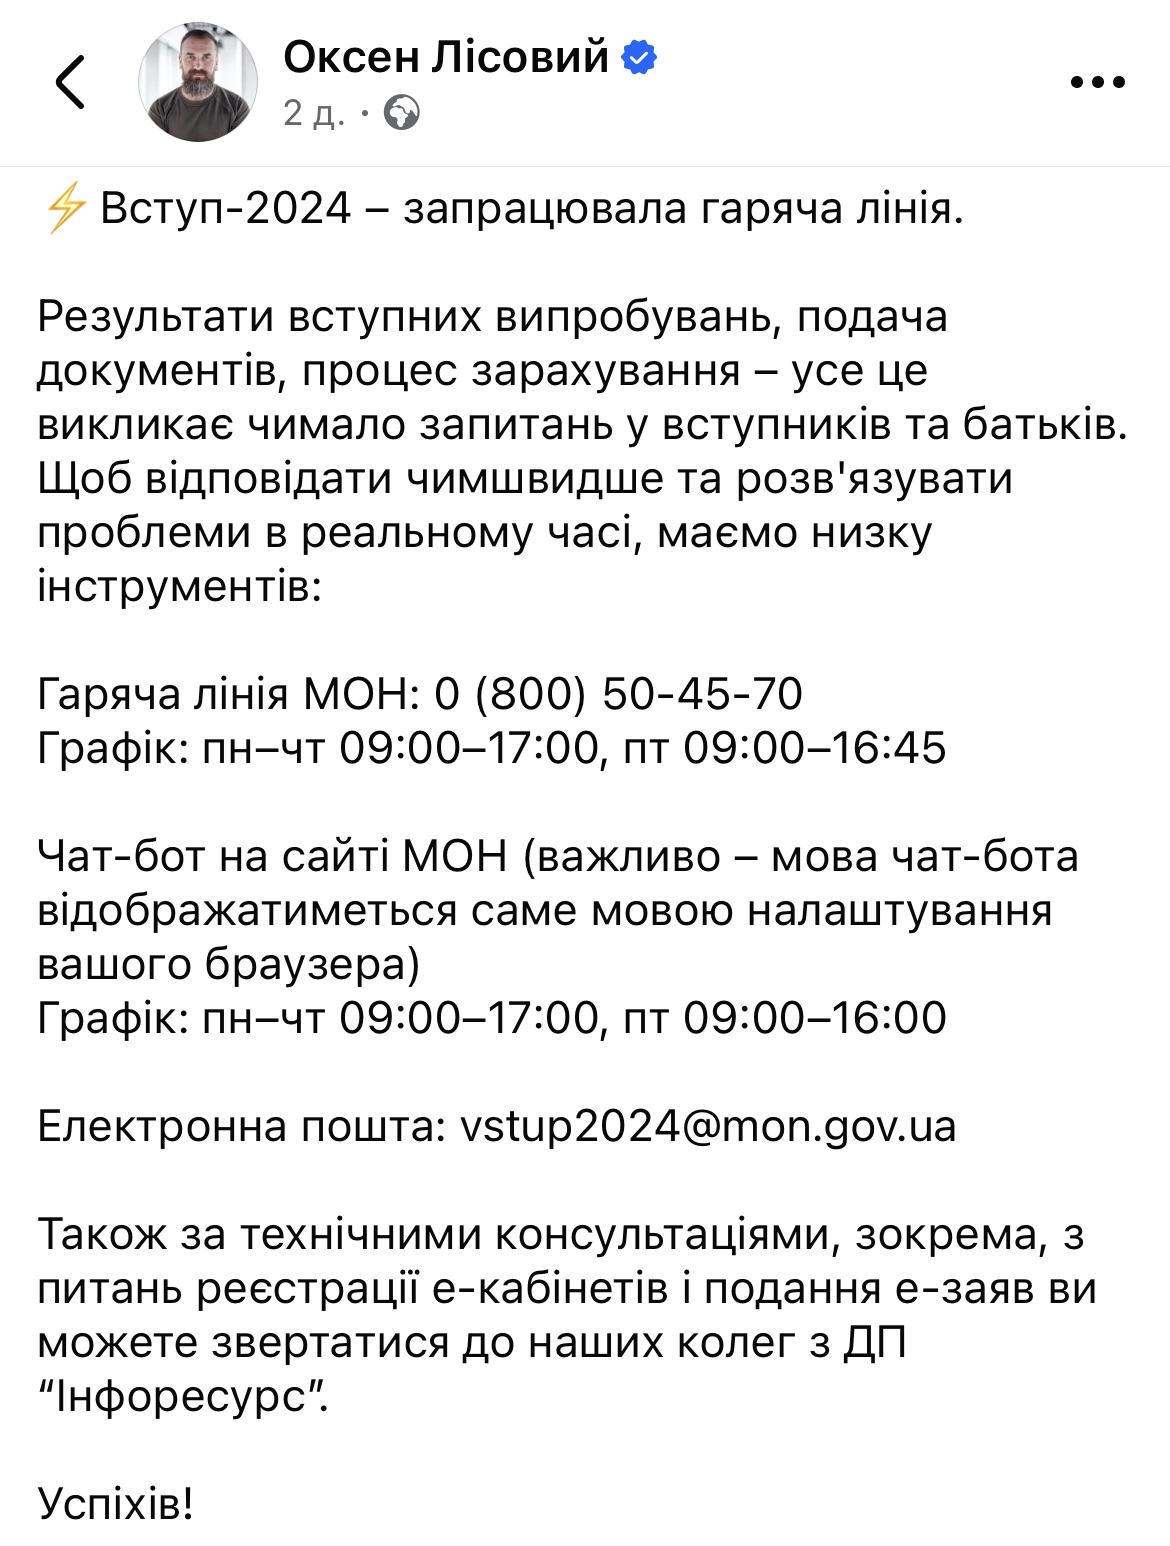 Вступительная кампания-2024. В Украине заработала горячая линия для ответа на вопросы абитуриентов